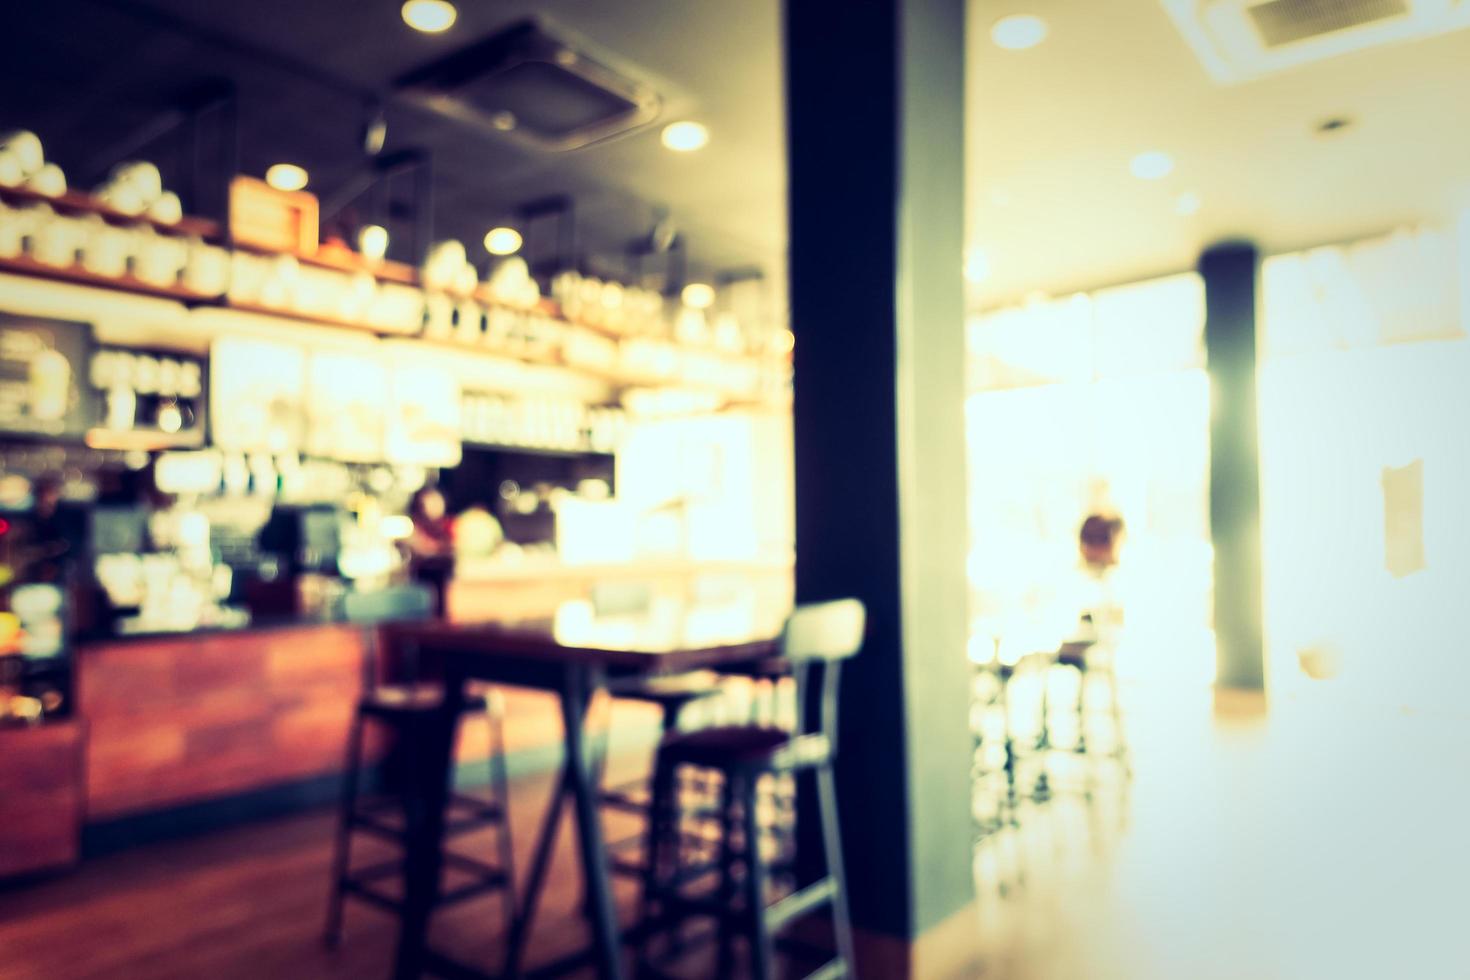 Desenfoque abstracto y cafetería y restaurante desenfocado foto